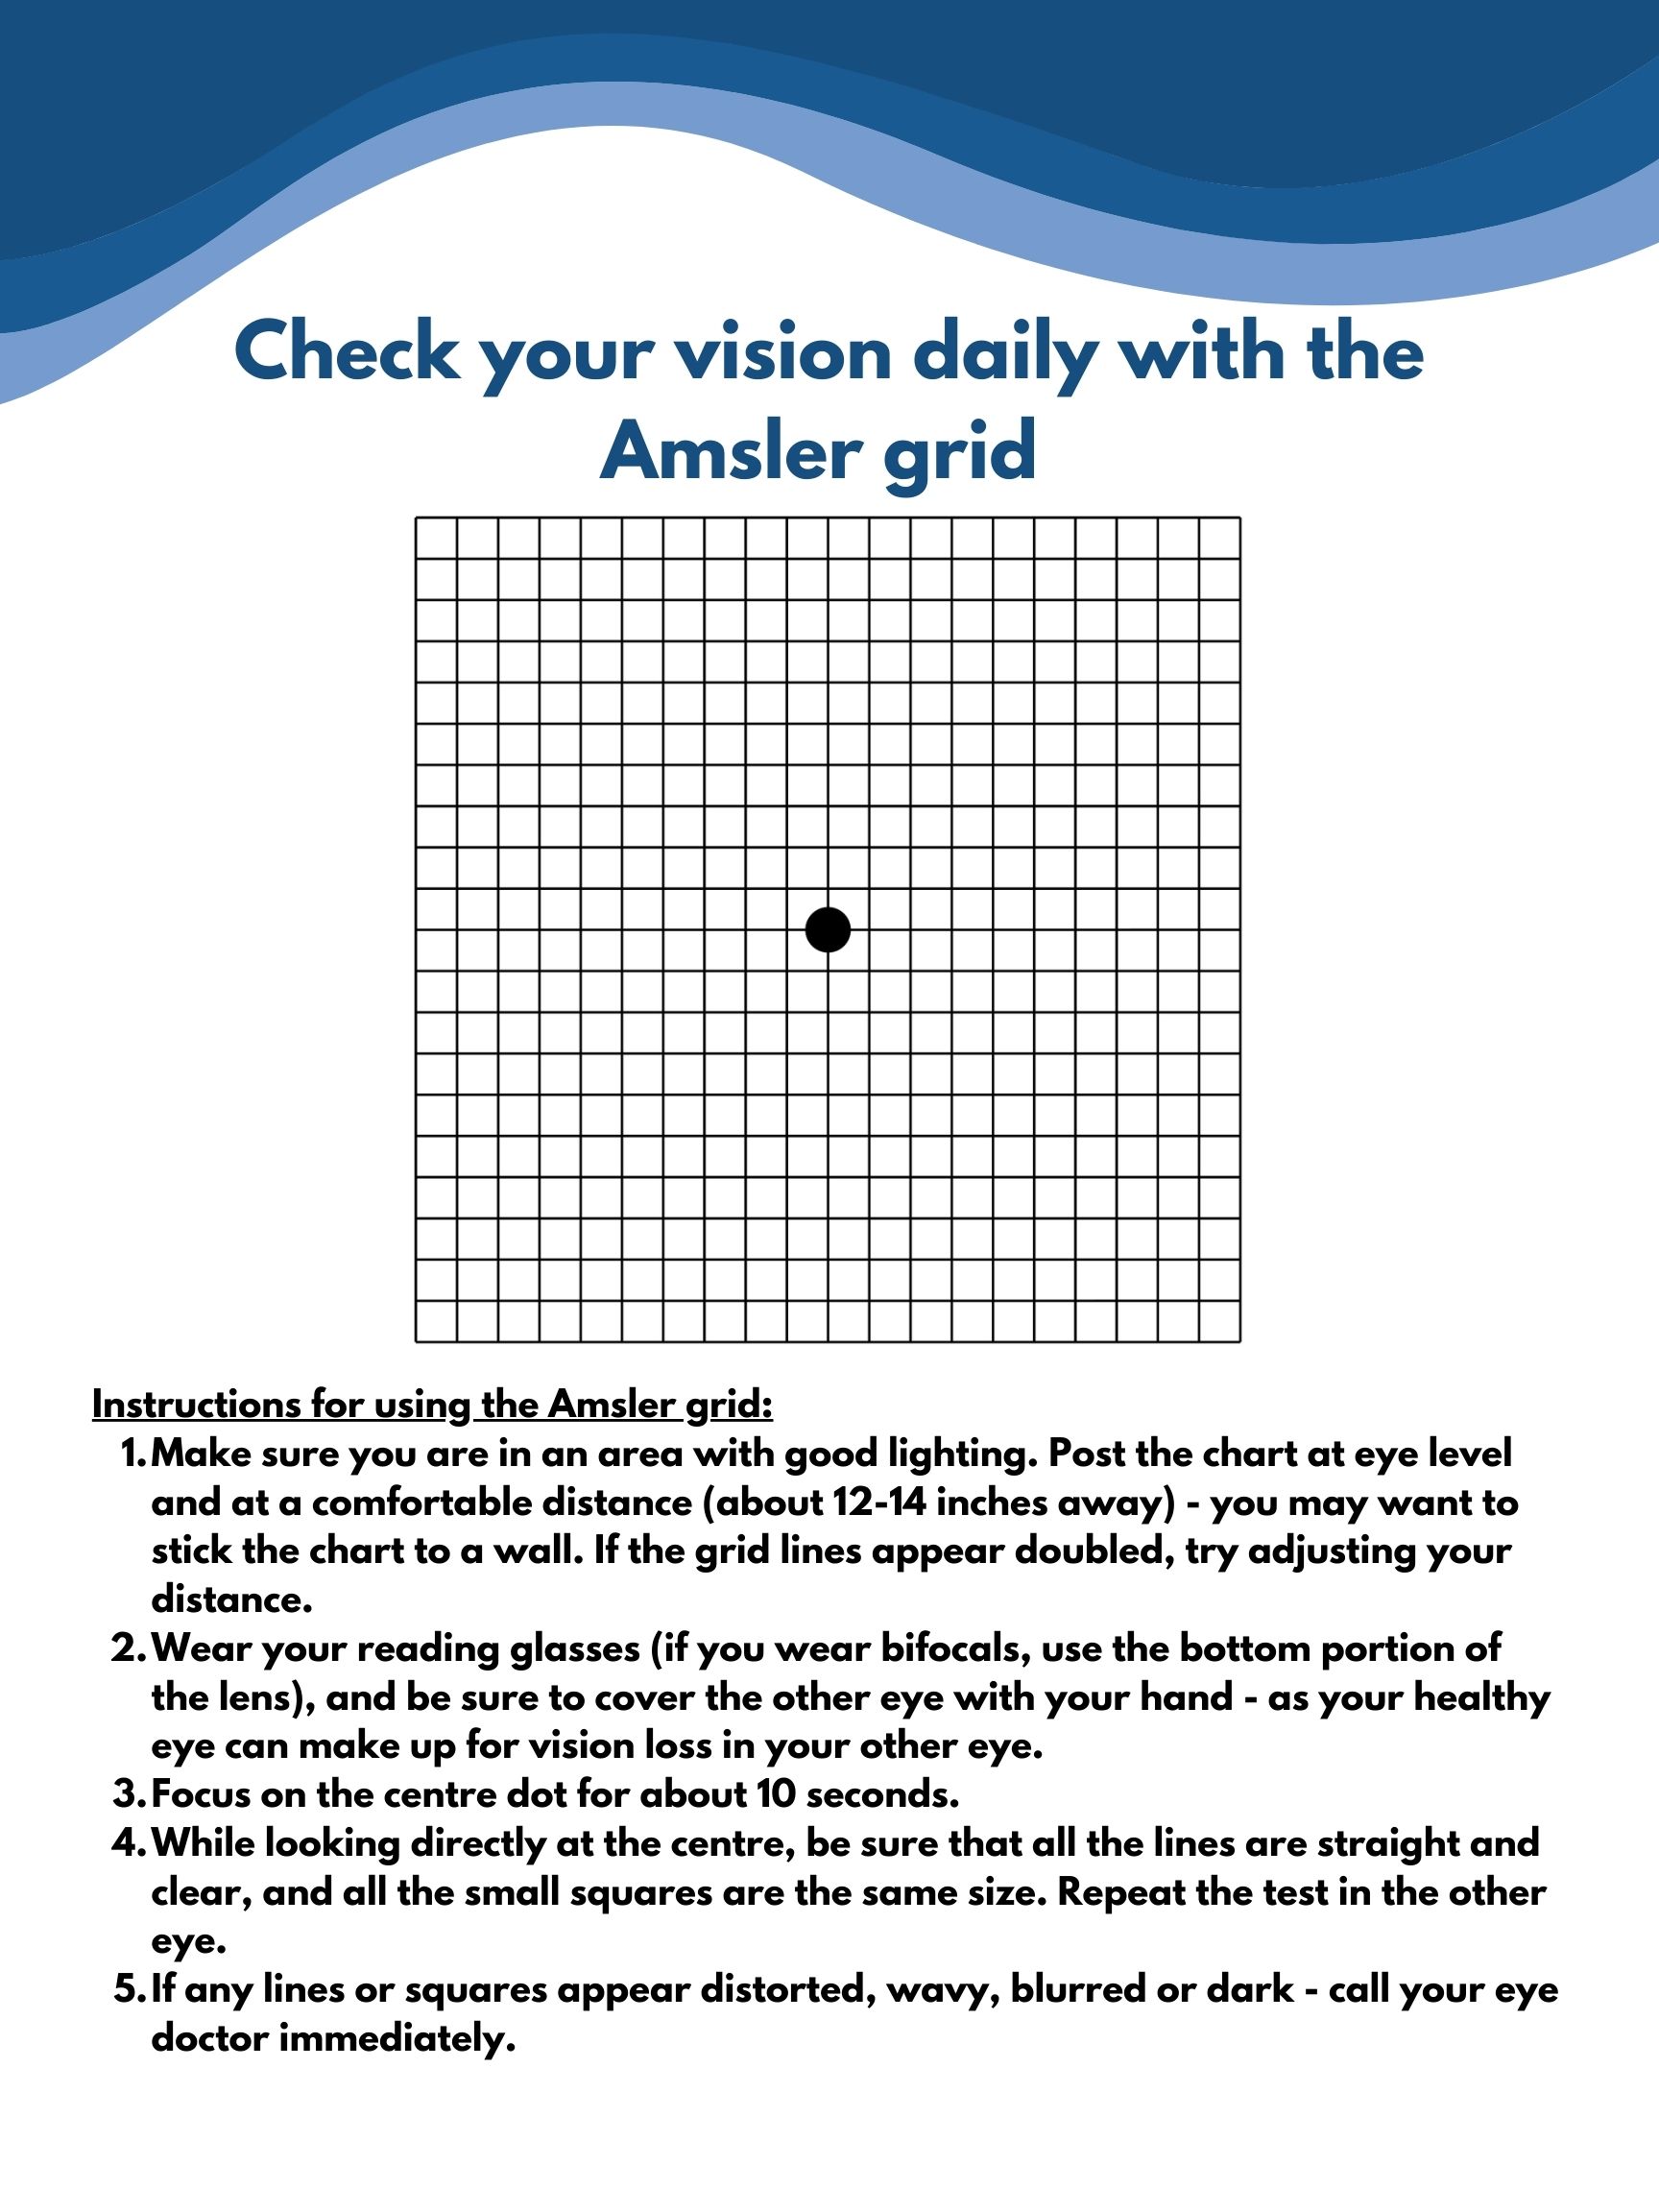 Amsler grid eye test